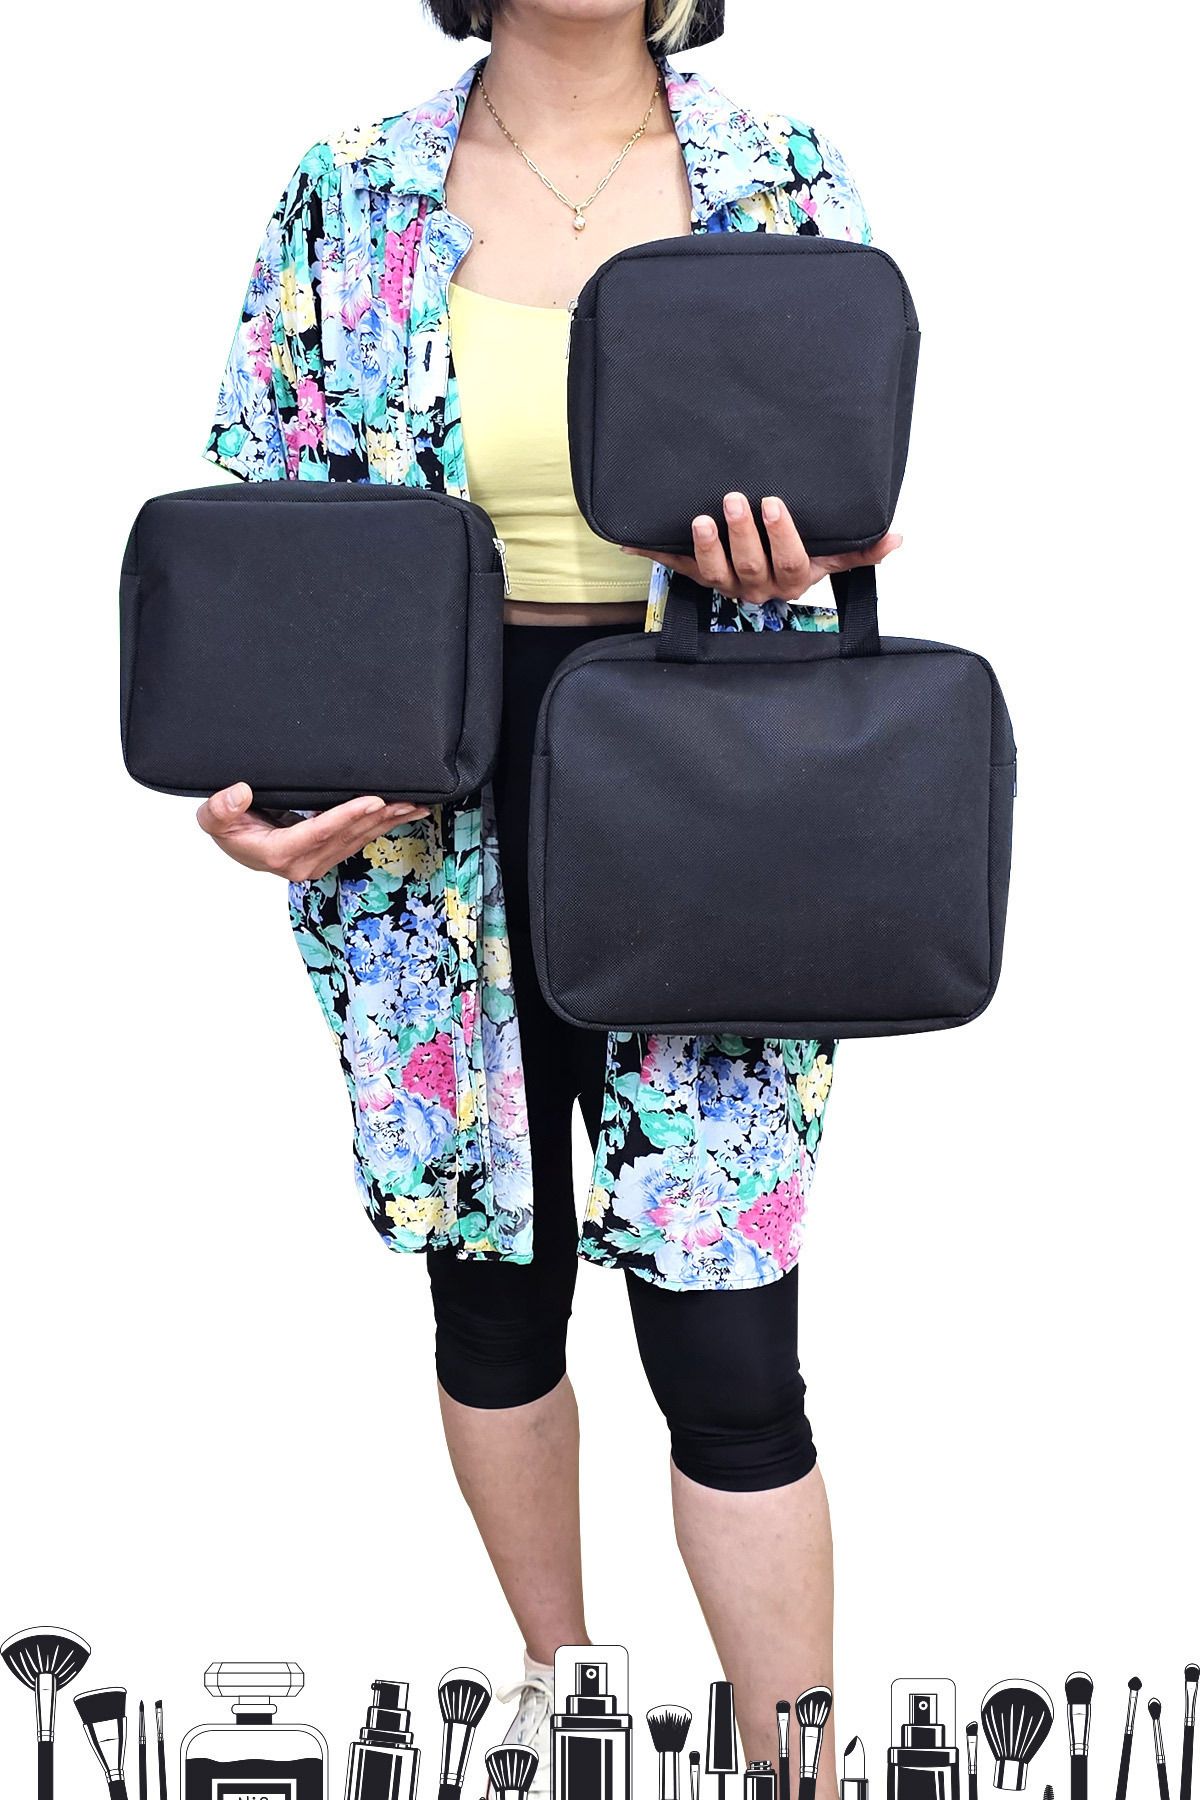 Woys Bags Siyah Renk 3 'lü Makyaj Çantası, Seyahat Makyaj Çantası, Kozmetik ve Kıyafetleri Taşımak İçin Uygun